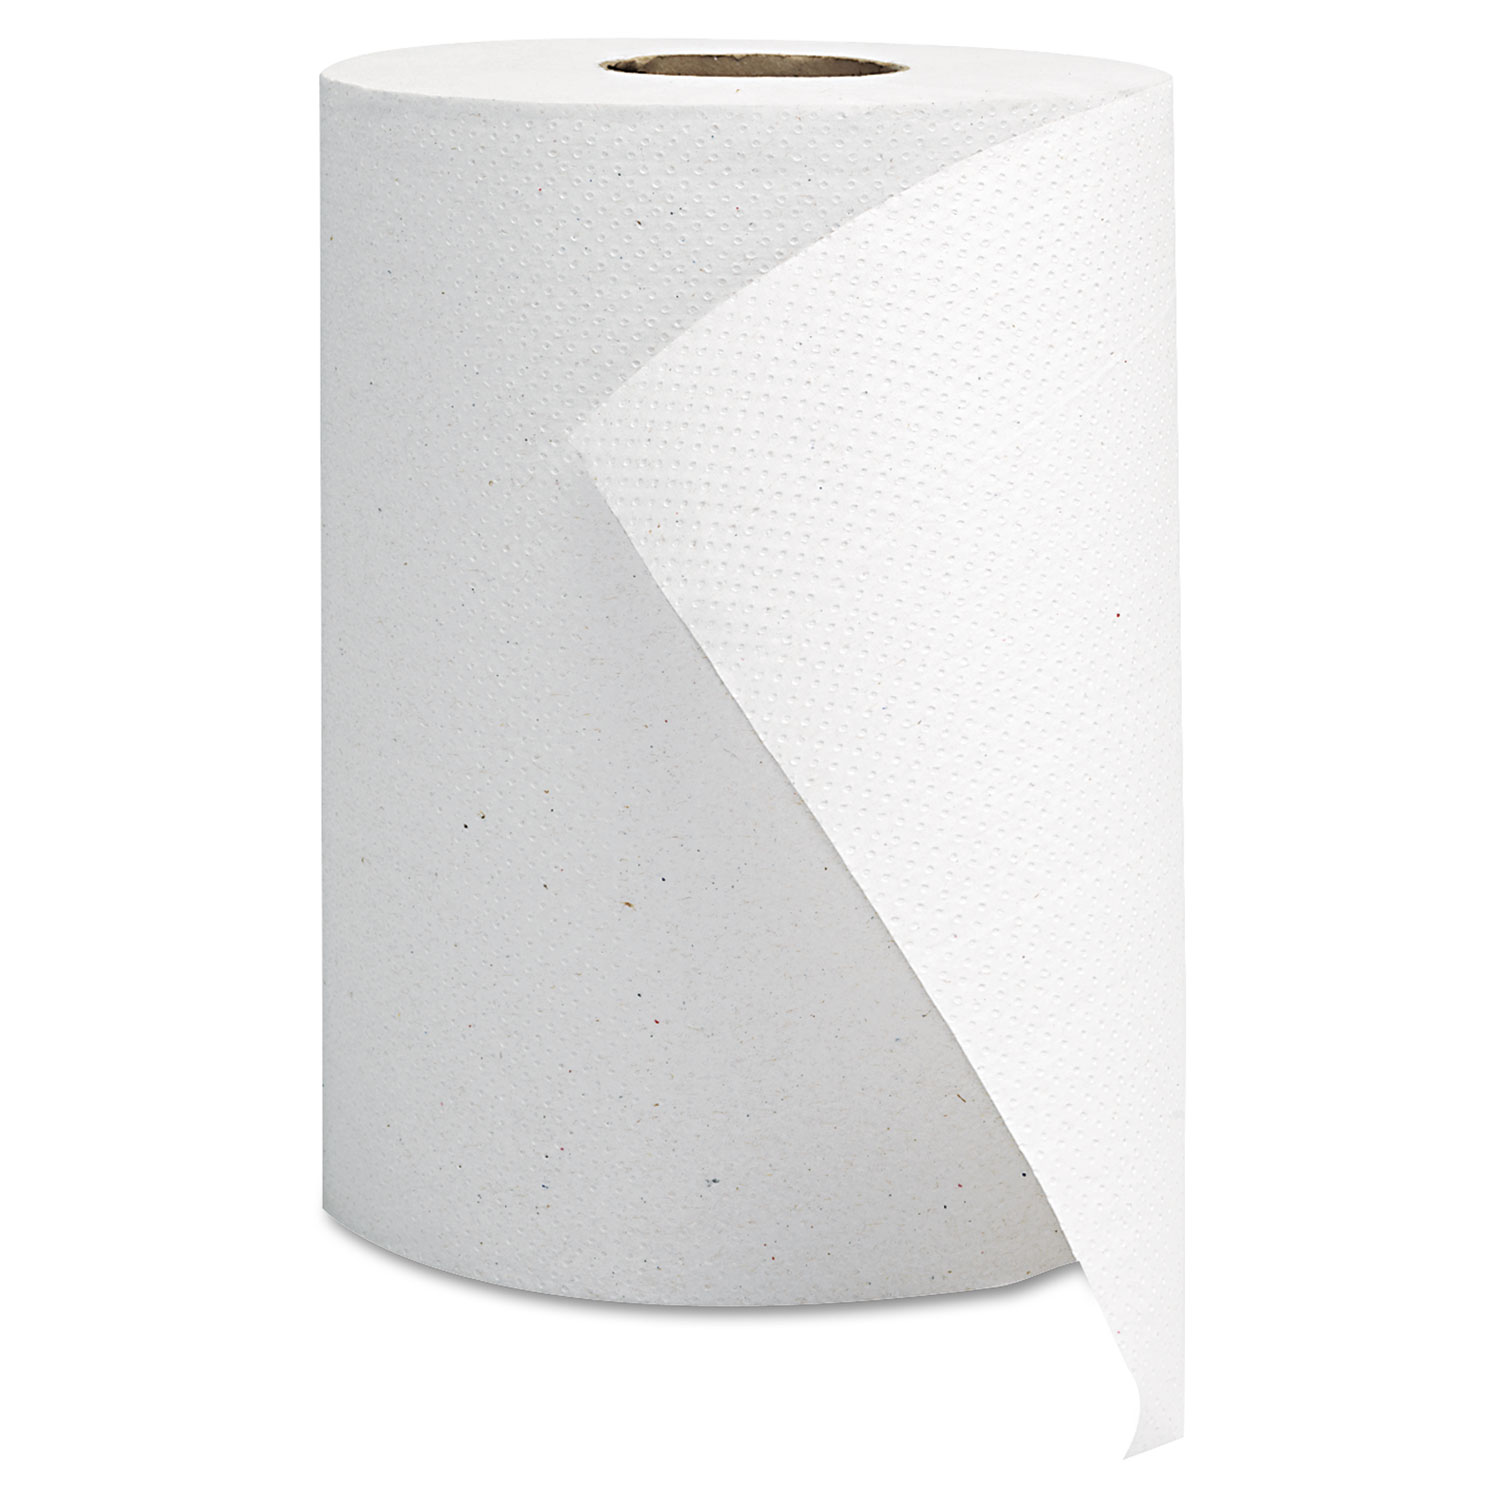 GEN Hardwound Roll Towels - White, 8 x 350', 12/Case